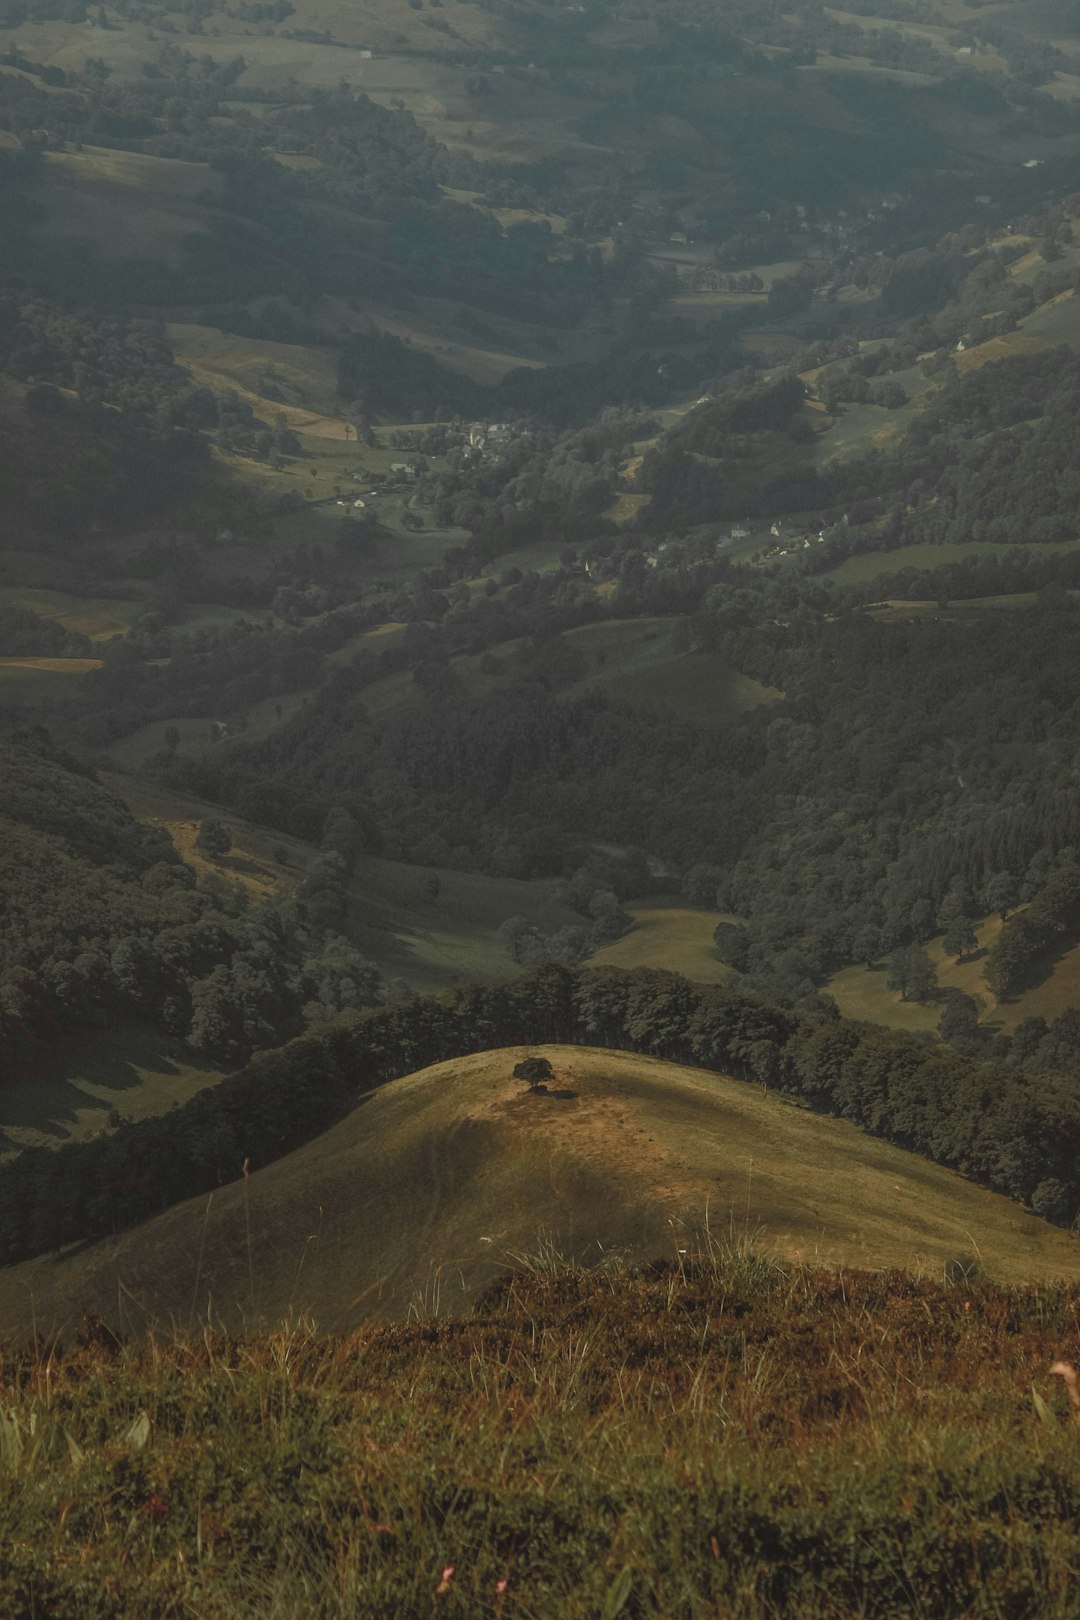 Hill photo spot Parc naturel régional des Volcans d'Auvergne Puy de Dôme